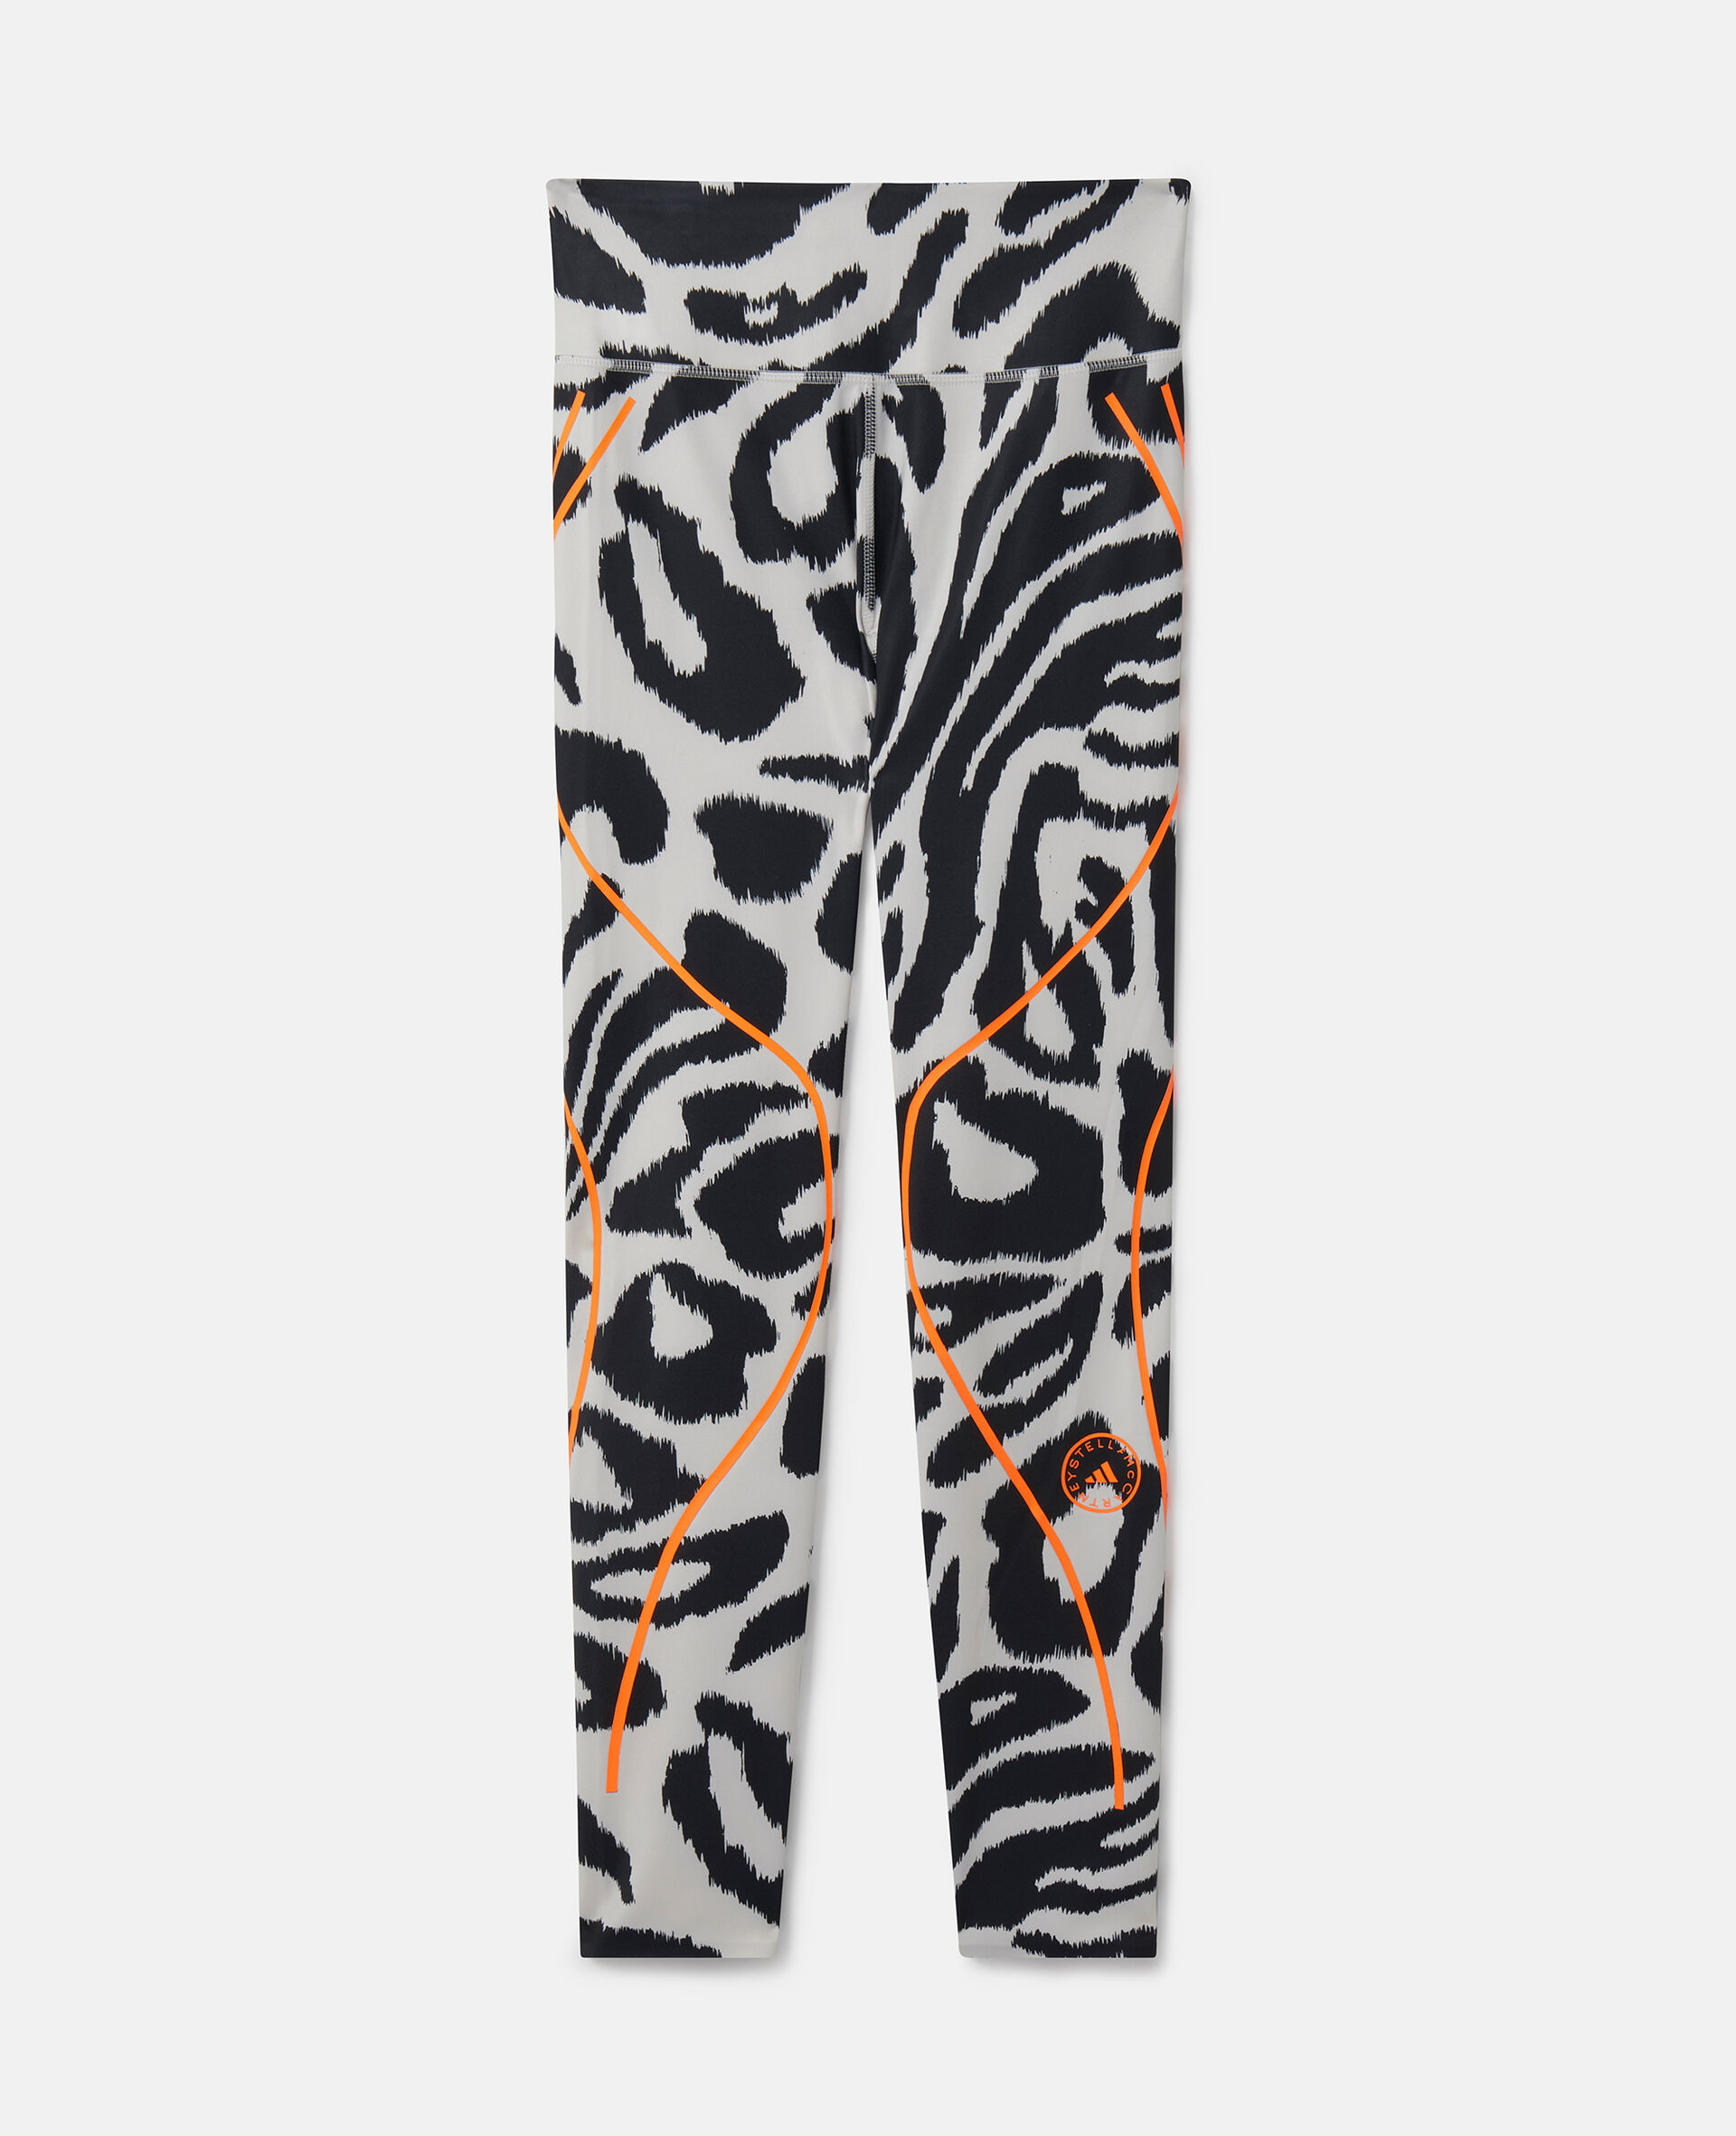 TruePace Leopard Print Running Leggings-Multicoloured-medium